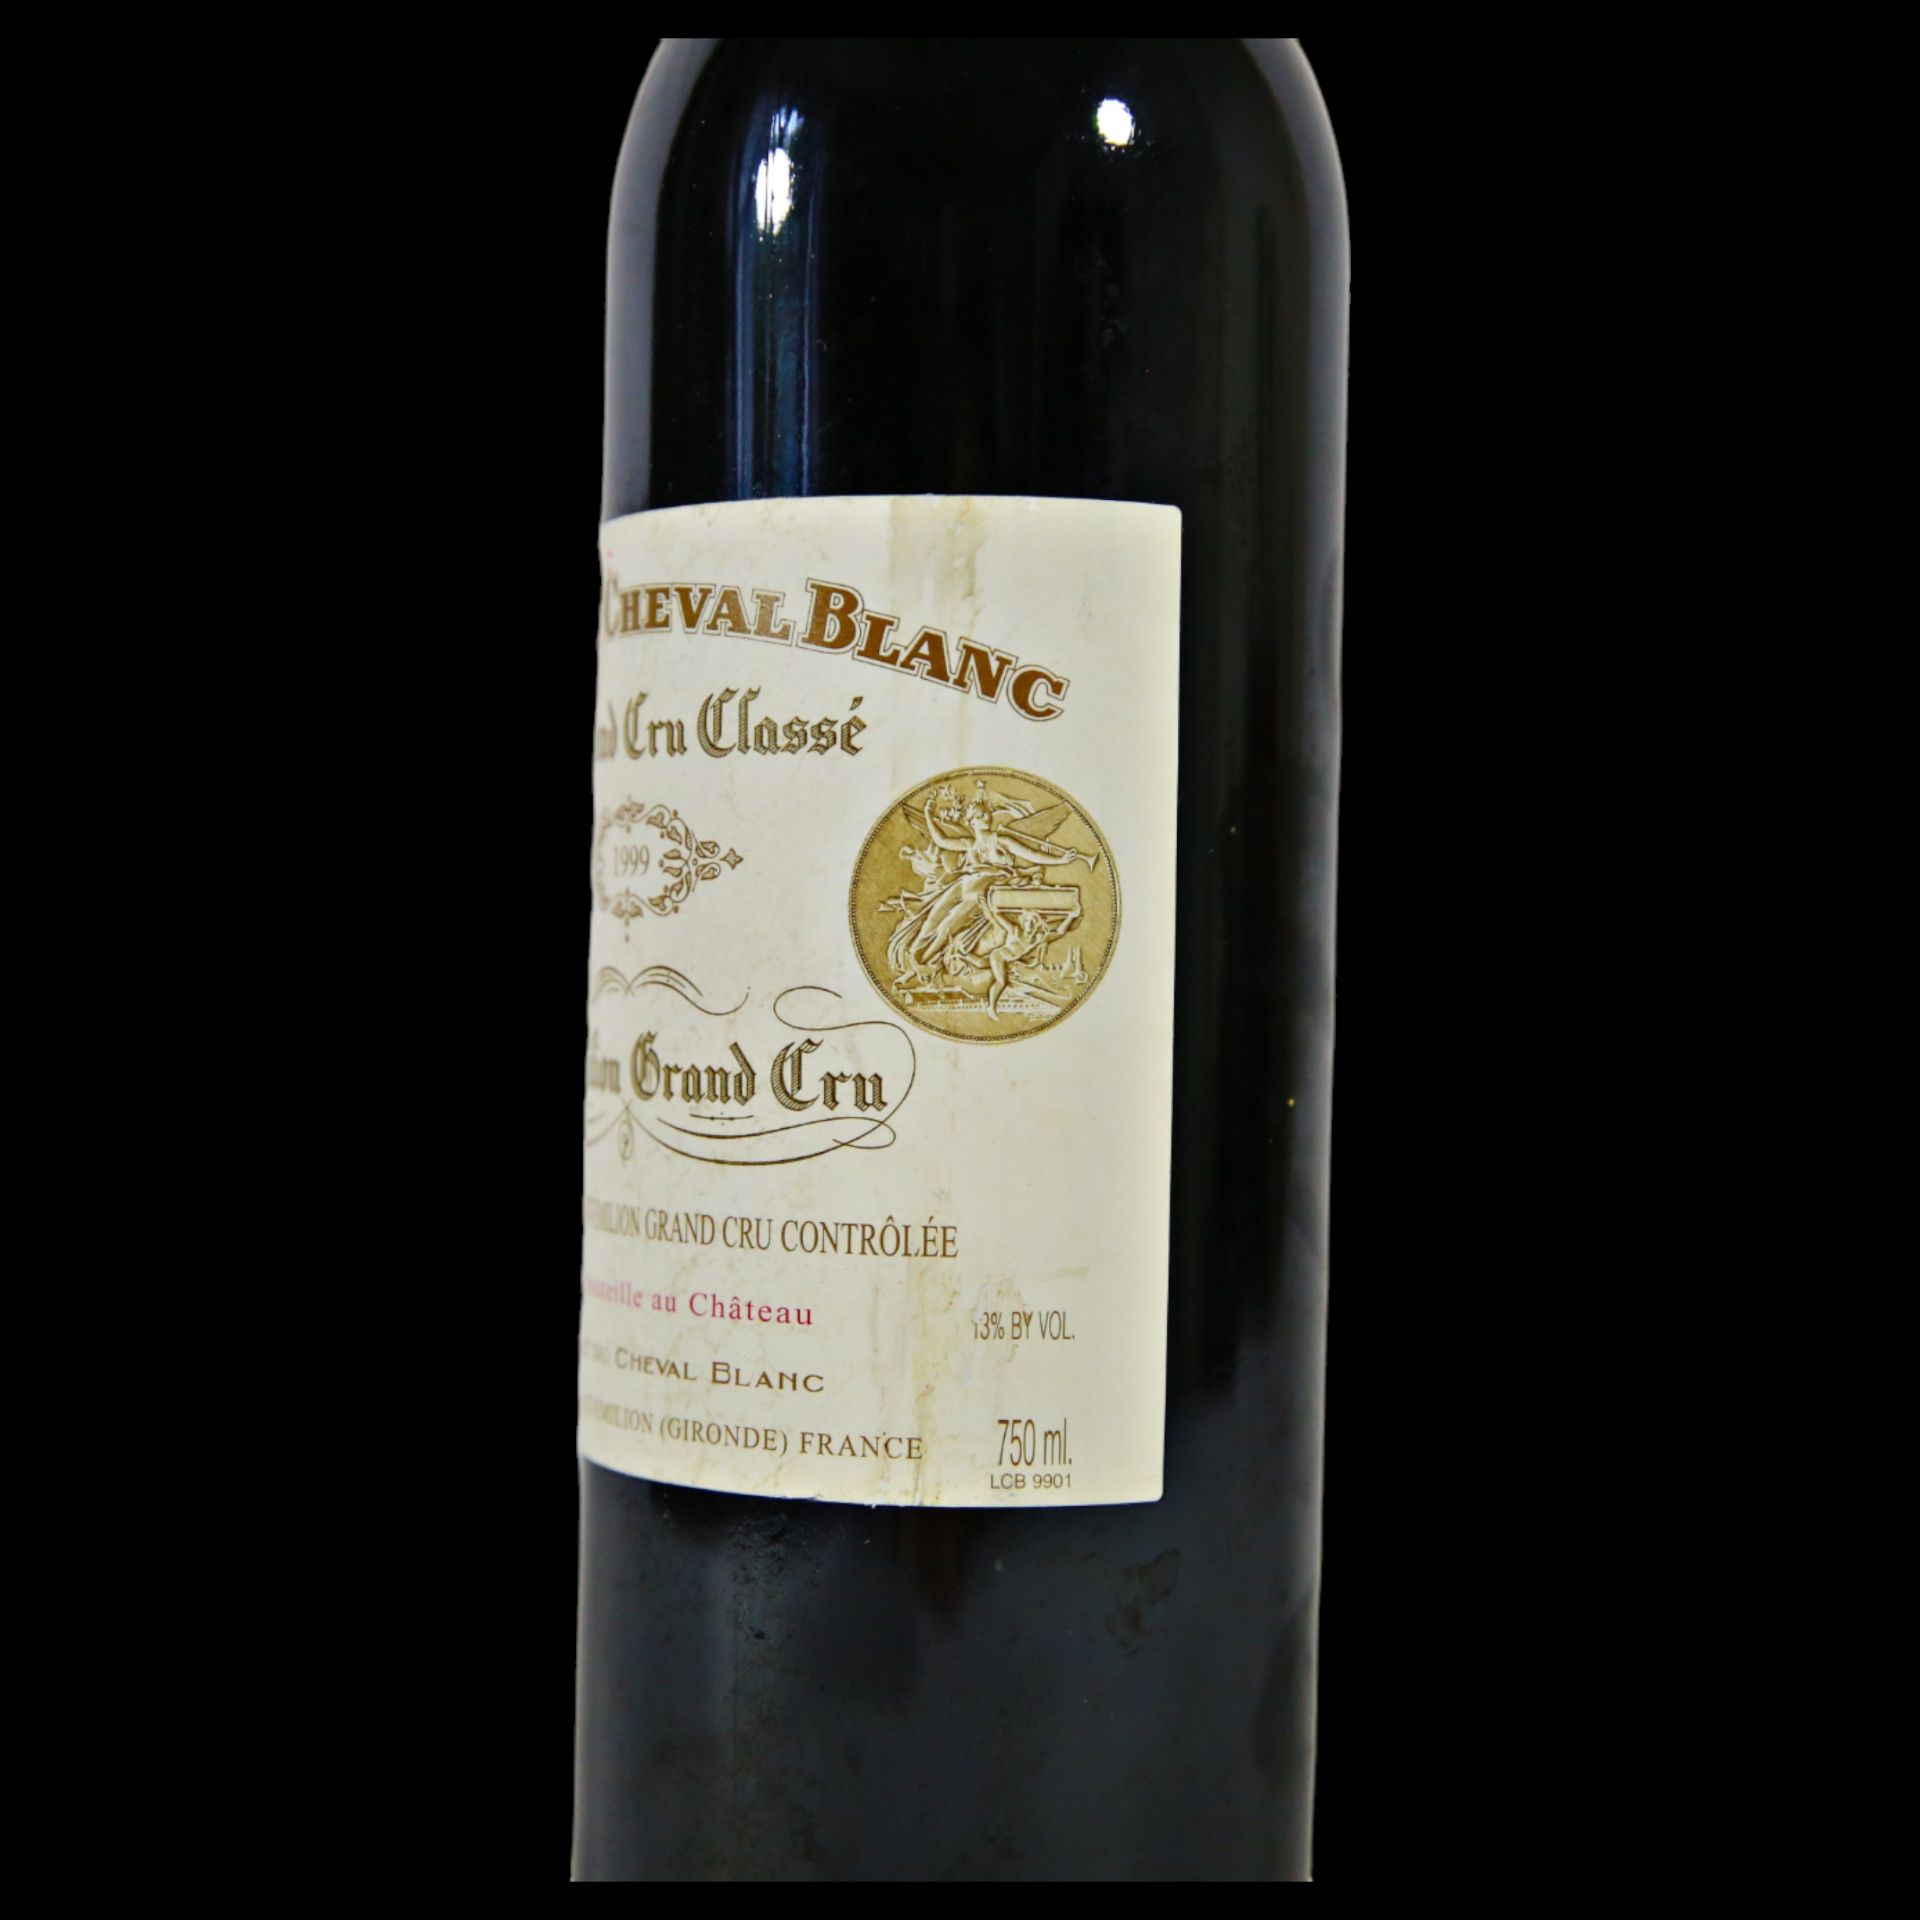 Bottle Vintage Chateau Cheval Blanc 1999, Bordeaux, Saint-Emilion Premier Grand Cru Classe. - Bild 5 aus 15